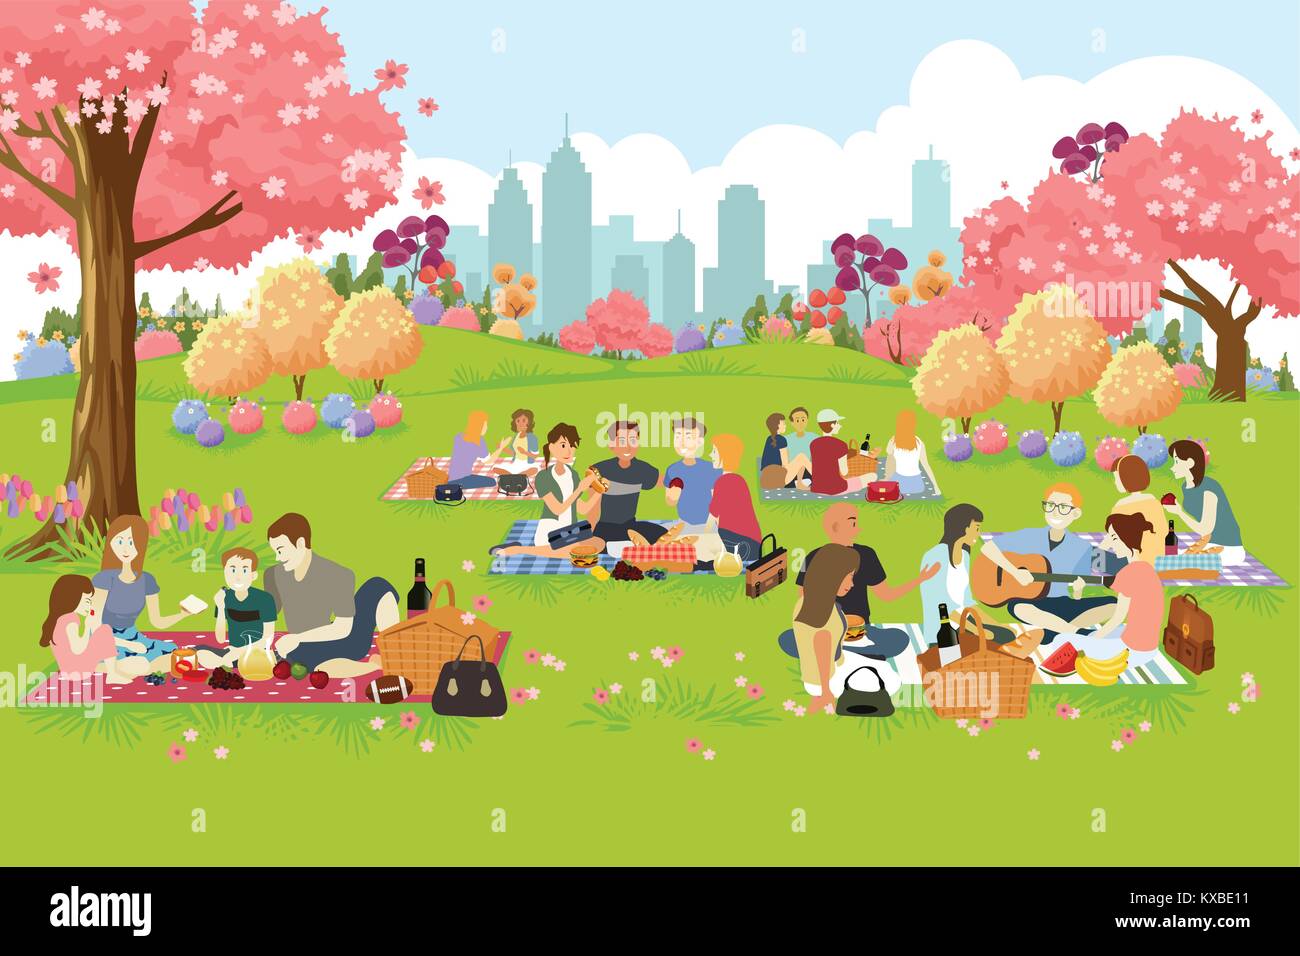 Un vecteur illustration de personnes Having Picnic au parc au printemps Illustration de Vecteur